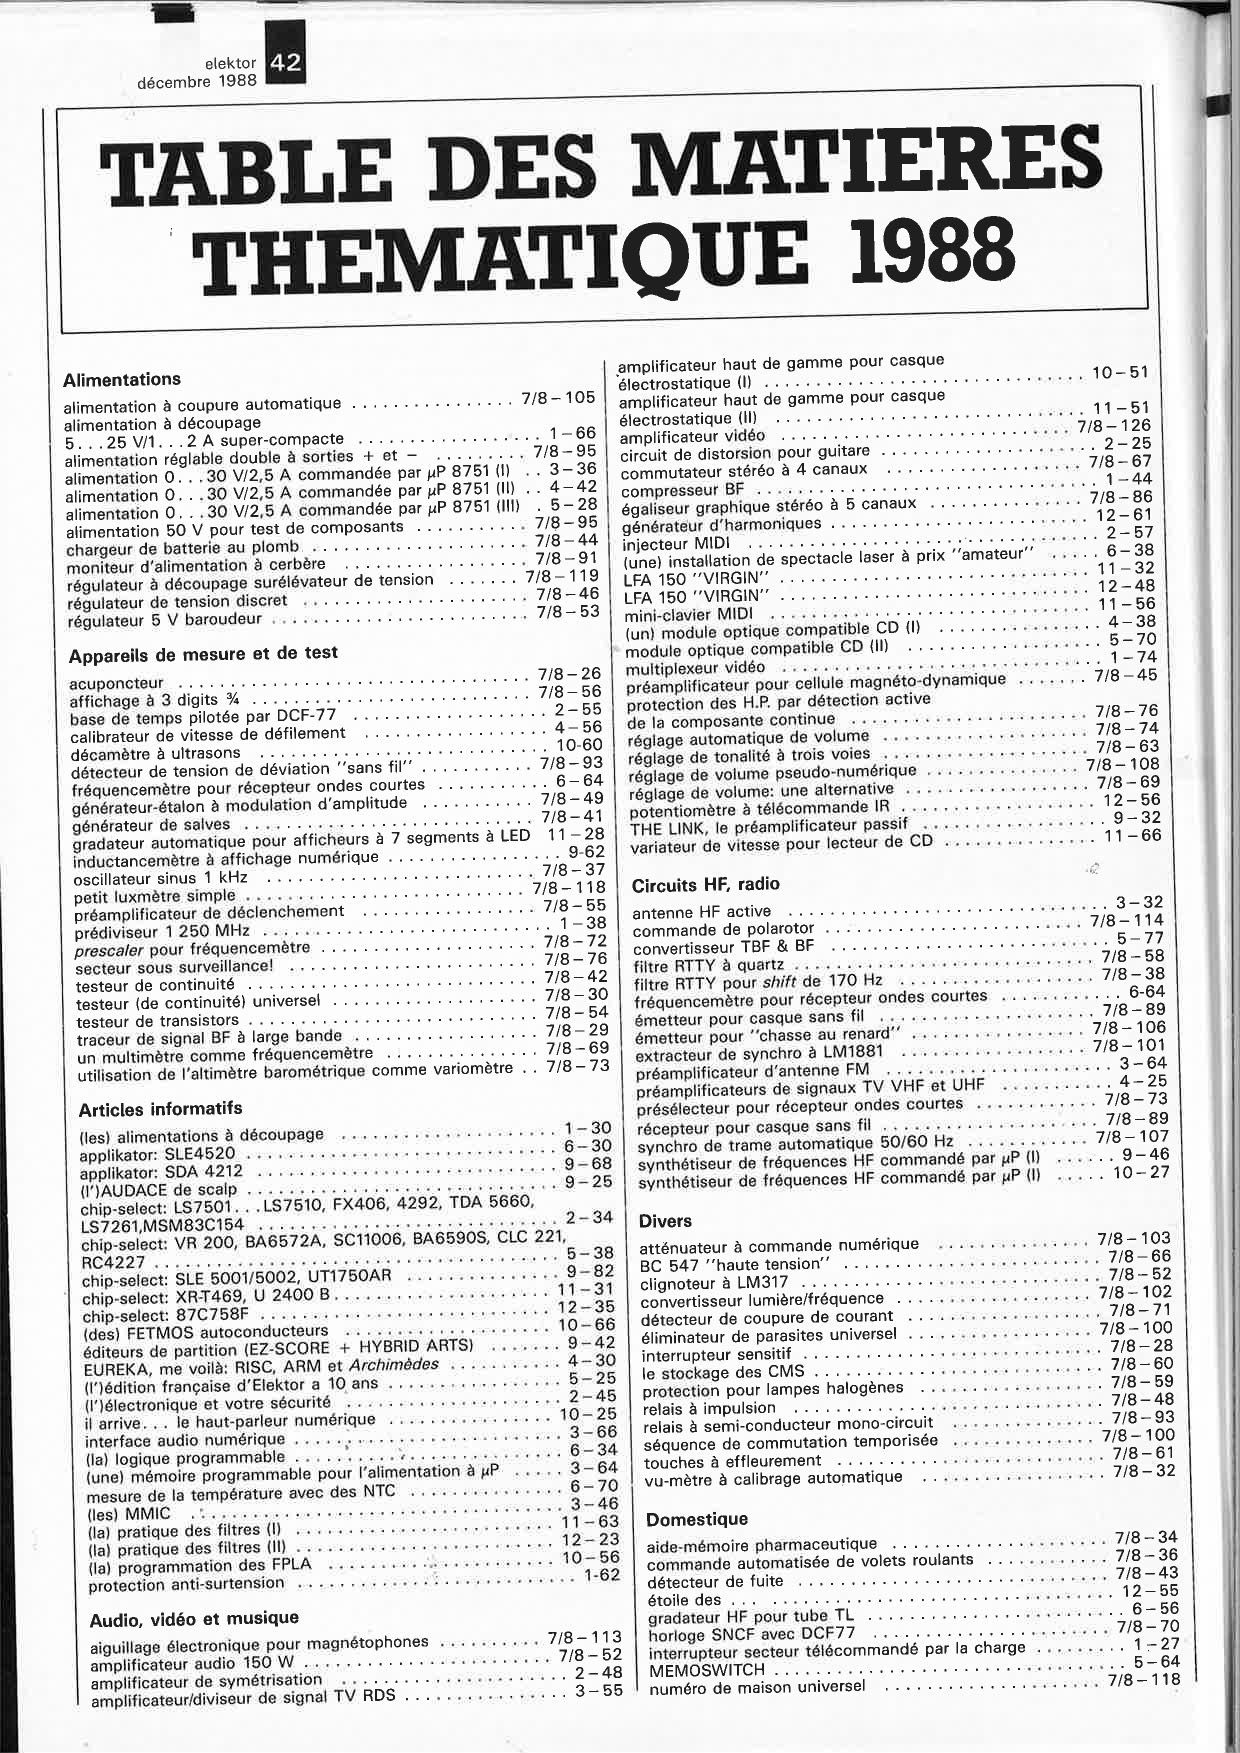 TABLE DES MATIERES THEMATIQUE 1988